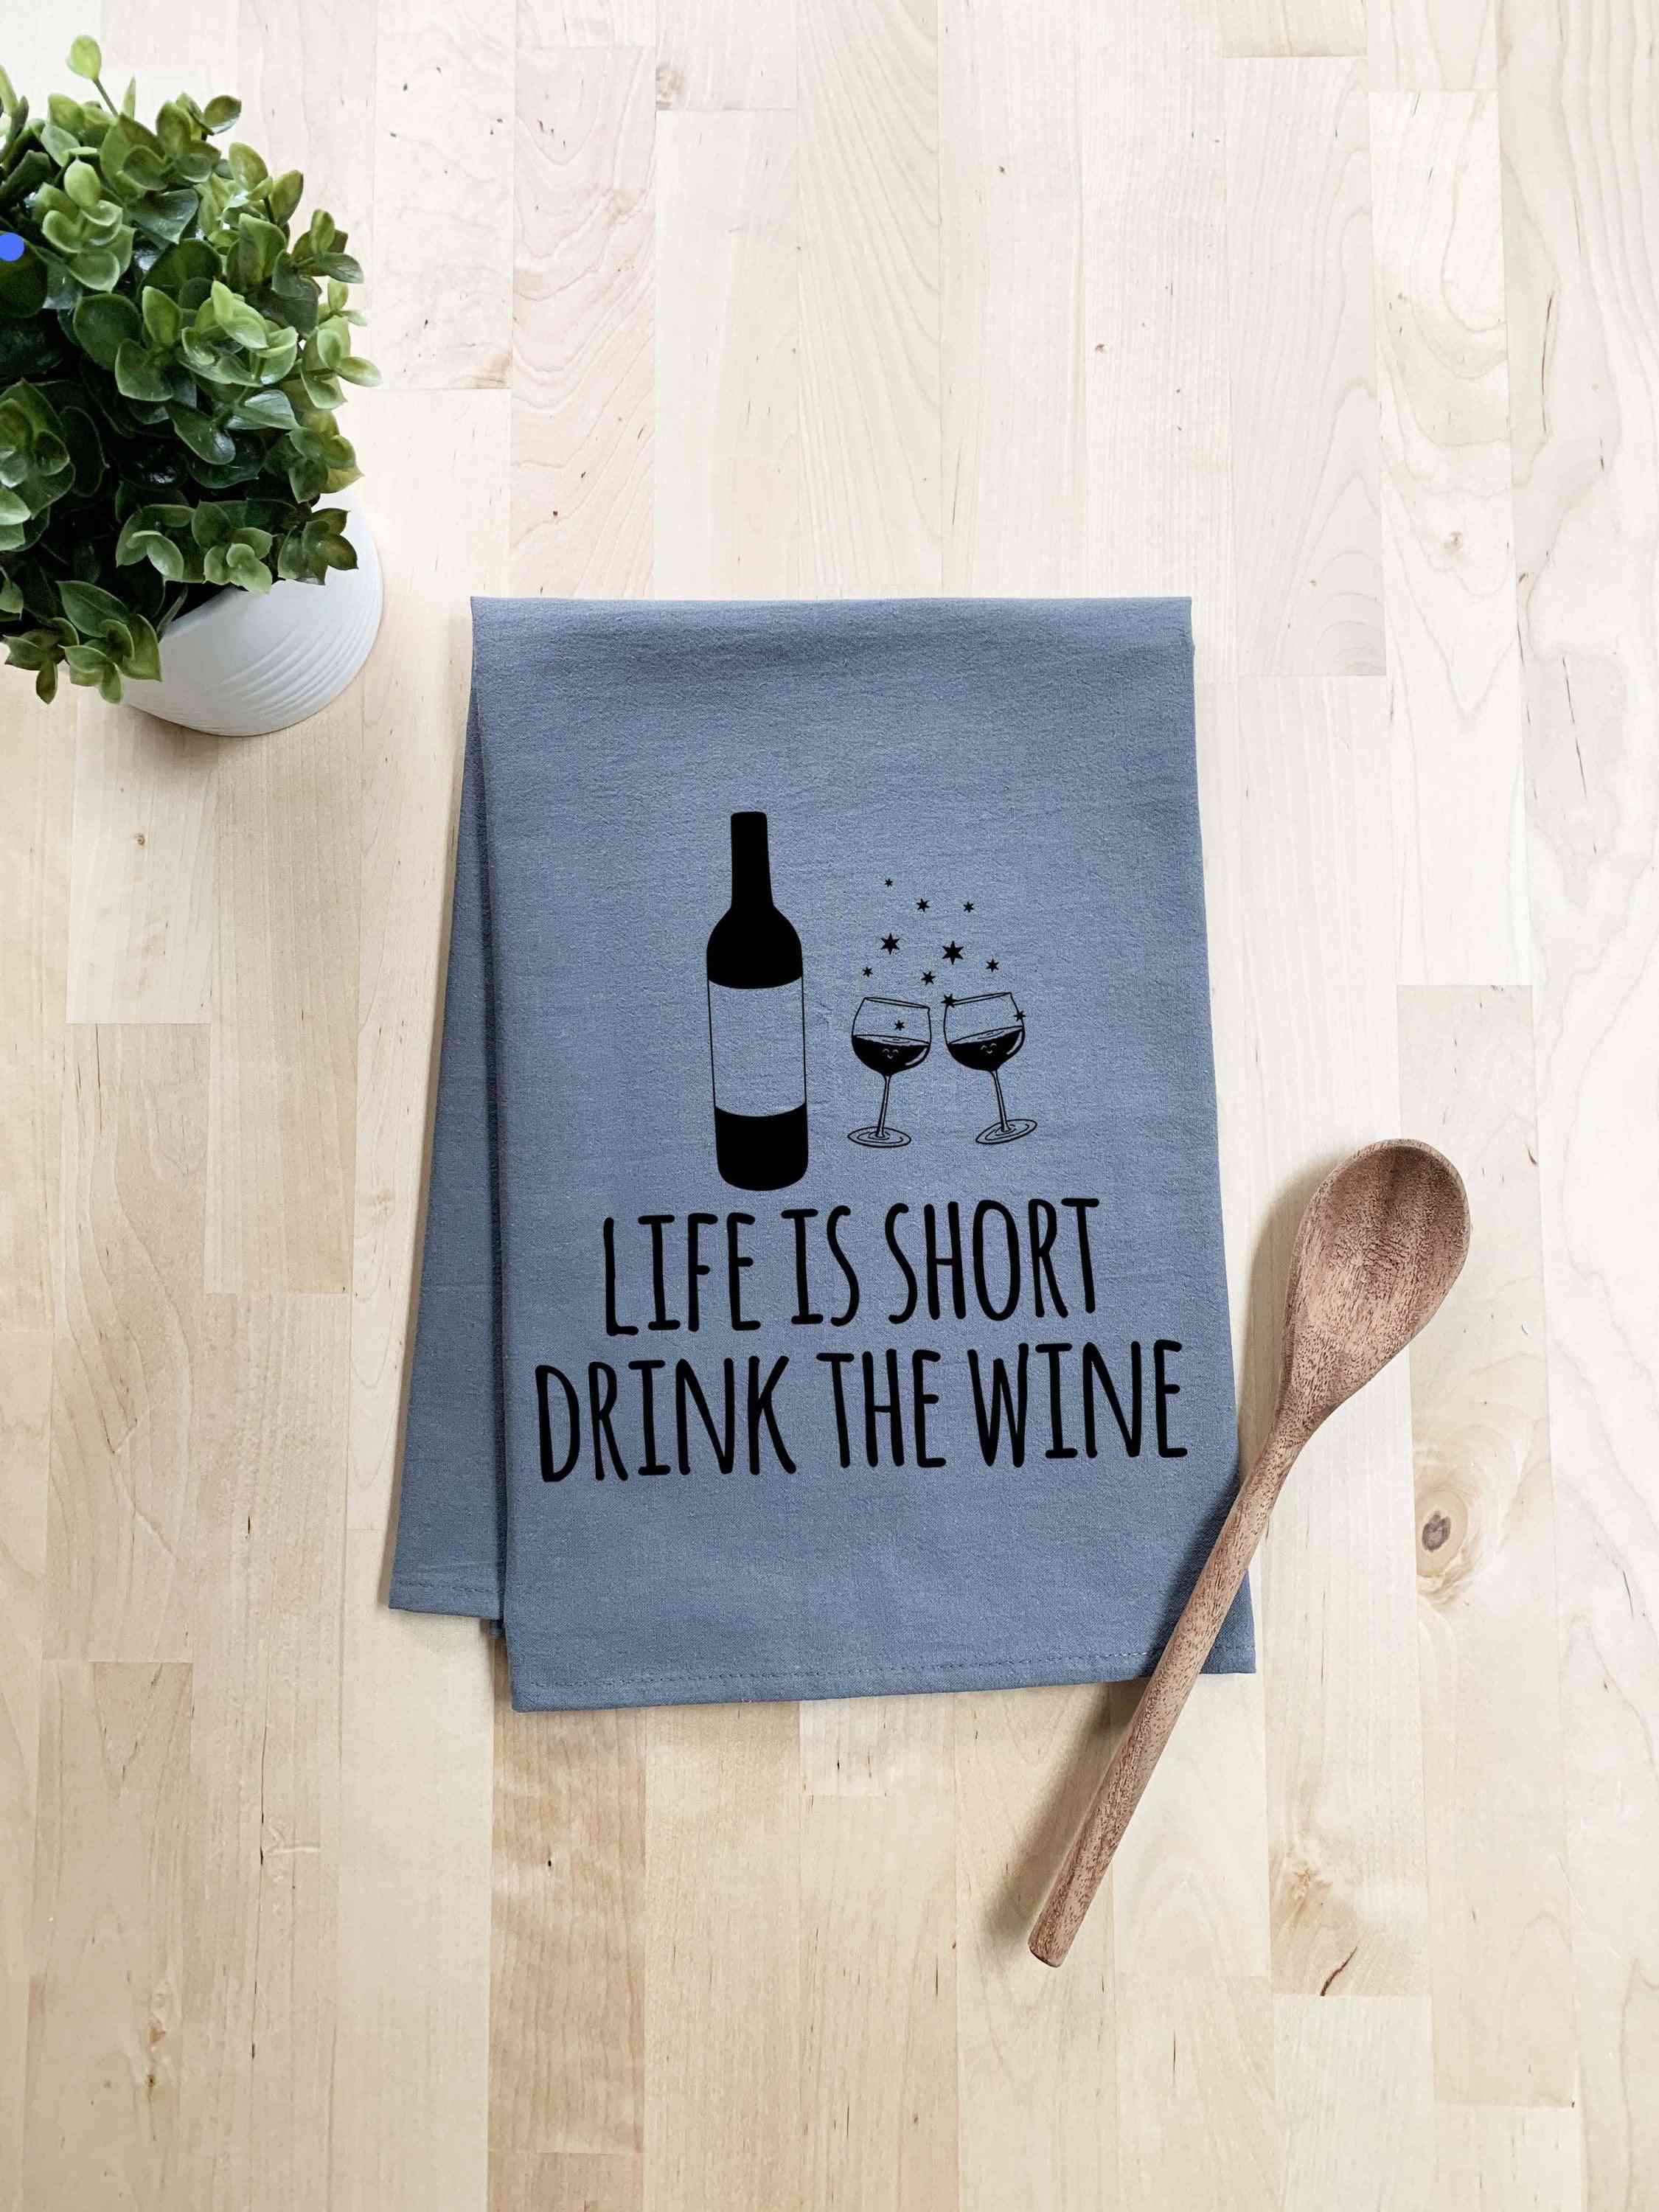 Livet är kort dricka vinhandduk